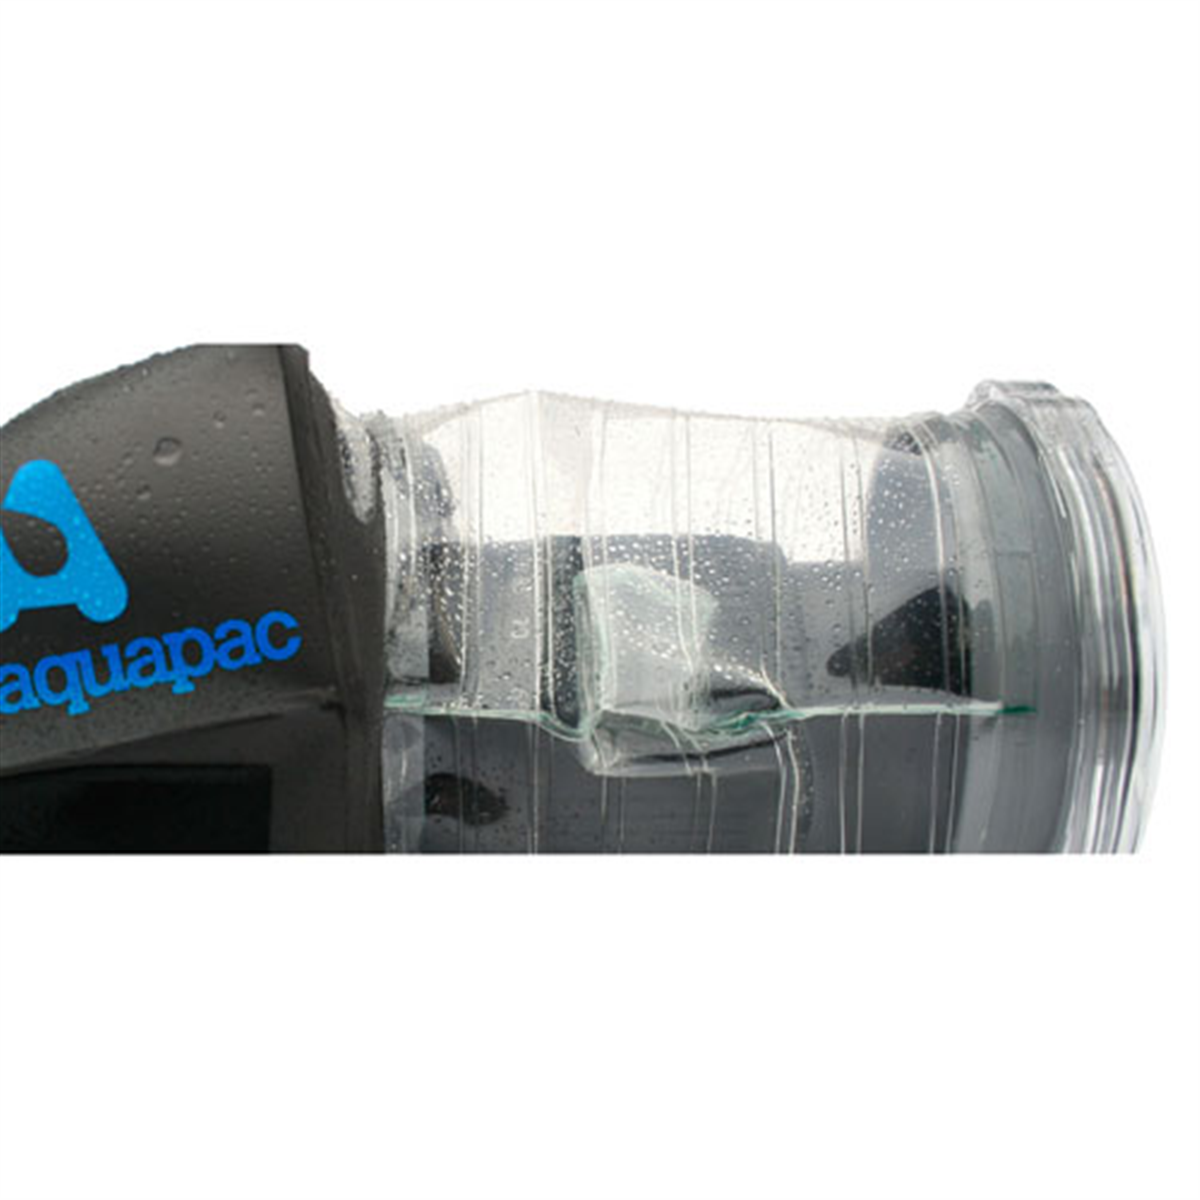 Aquapac - SLR Camera Case S458